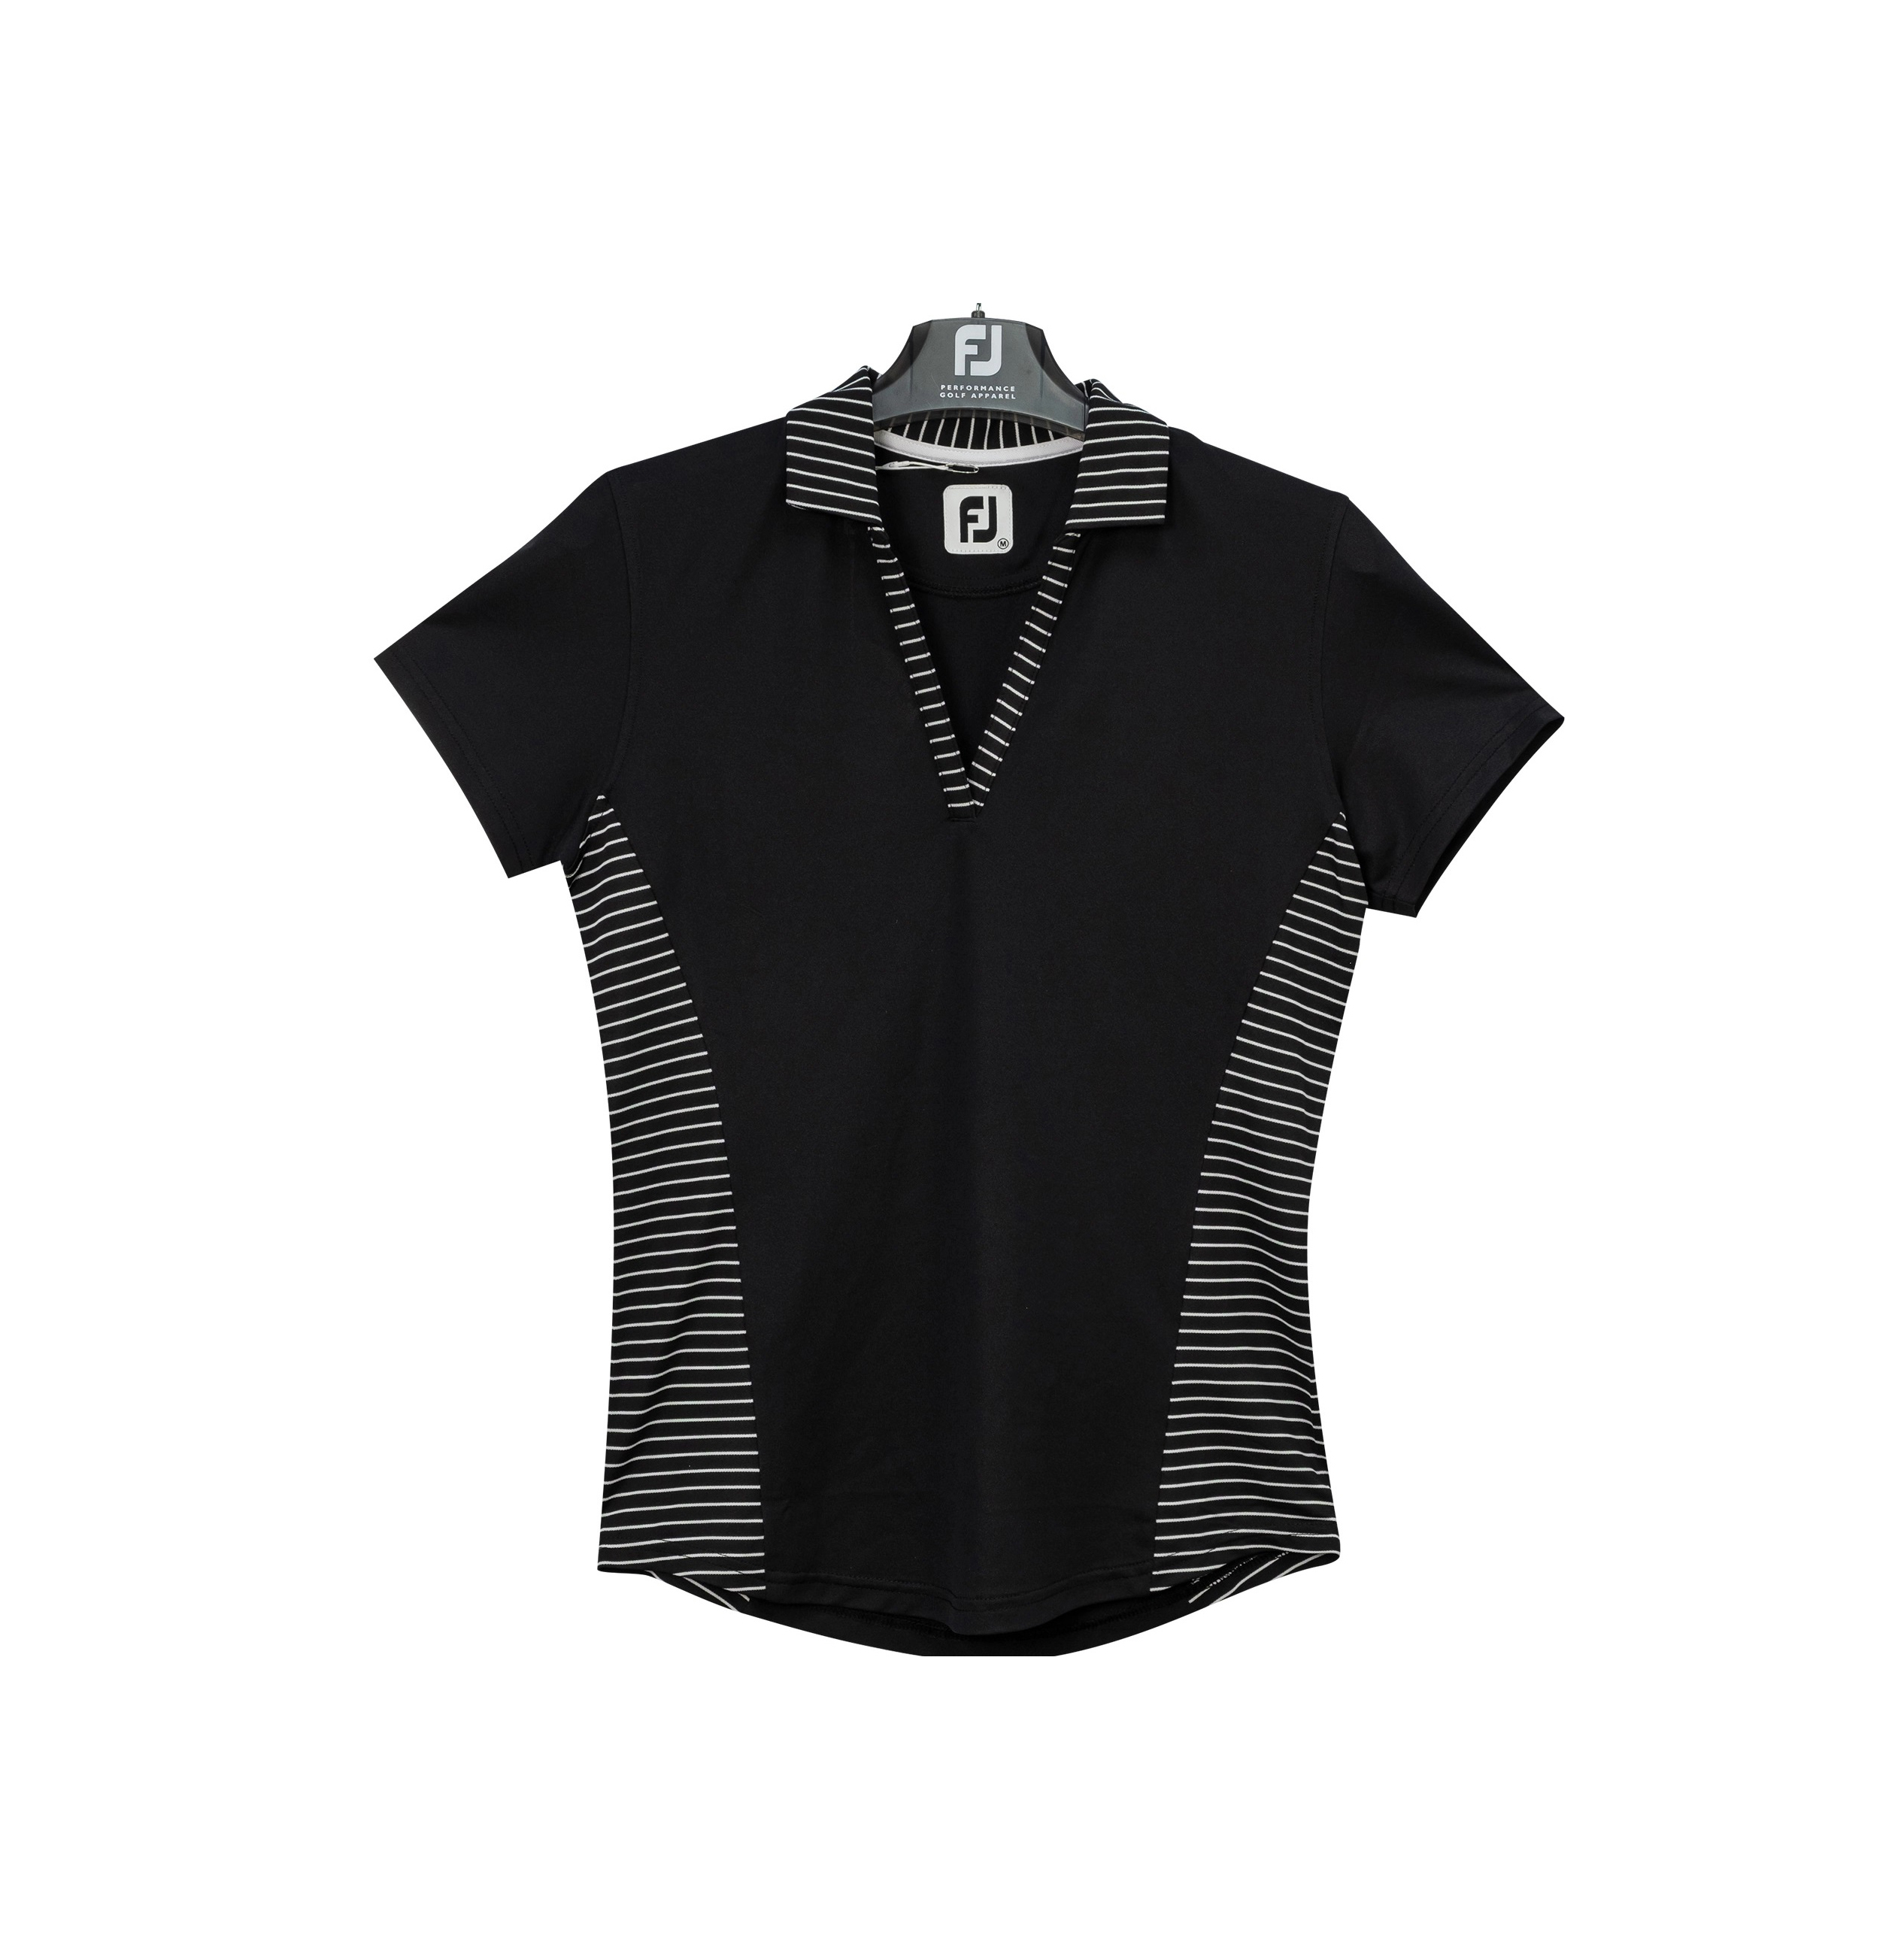 Polo Golf Nữ Footjoy FJ Women's Short Sleeve Open Placket Stretch Pique Shirt - 87146, 87417, 87418 - Áo golf nữ thiết kế độc đáo mang phong cách thể thao nhưng không kém phần sang trọng